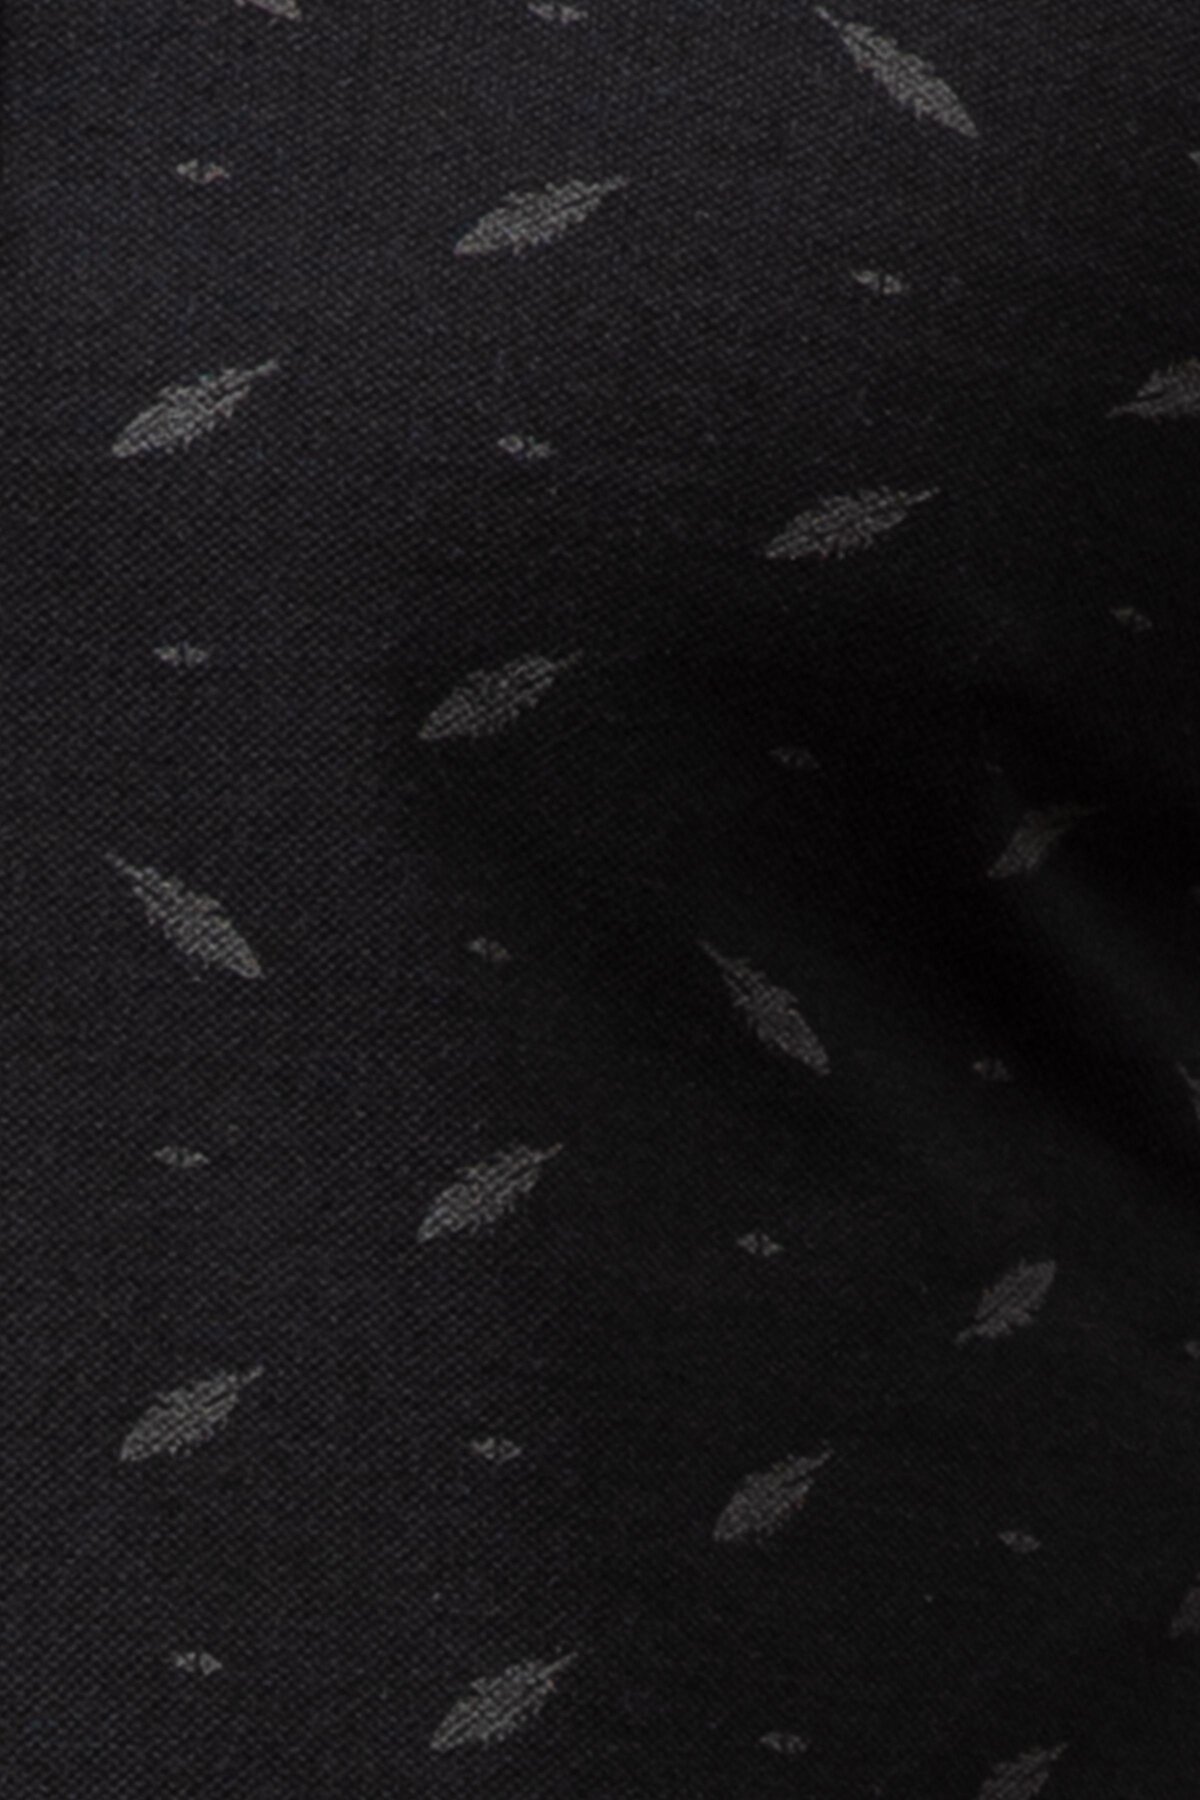 italia.giyim - Louis Vuitton Yeni Sezon Polo Yaka Tişört